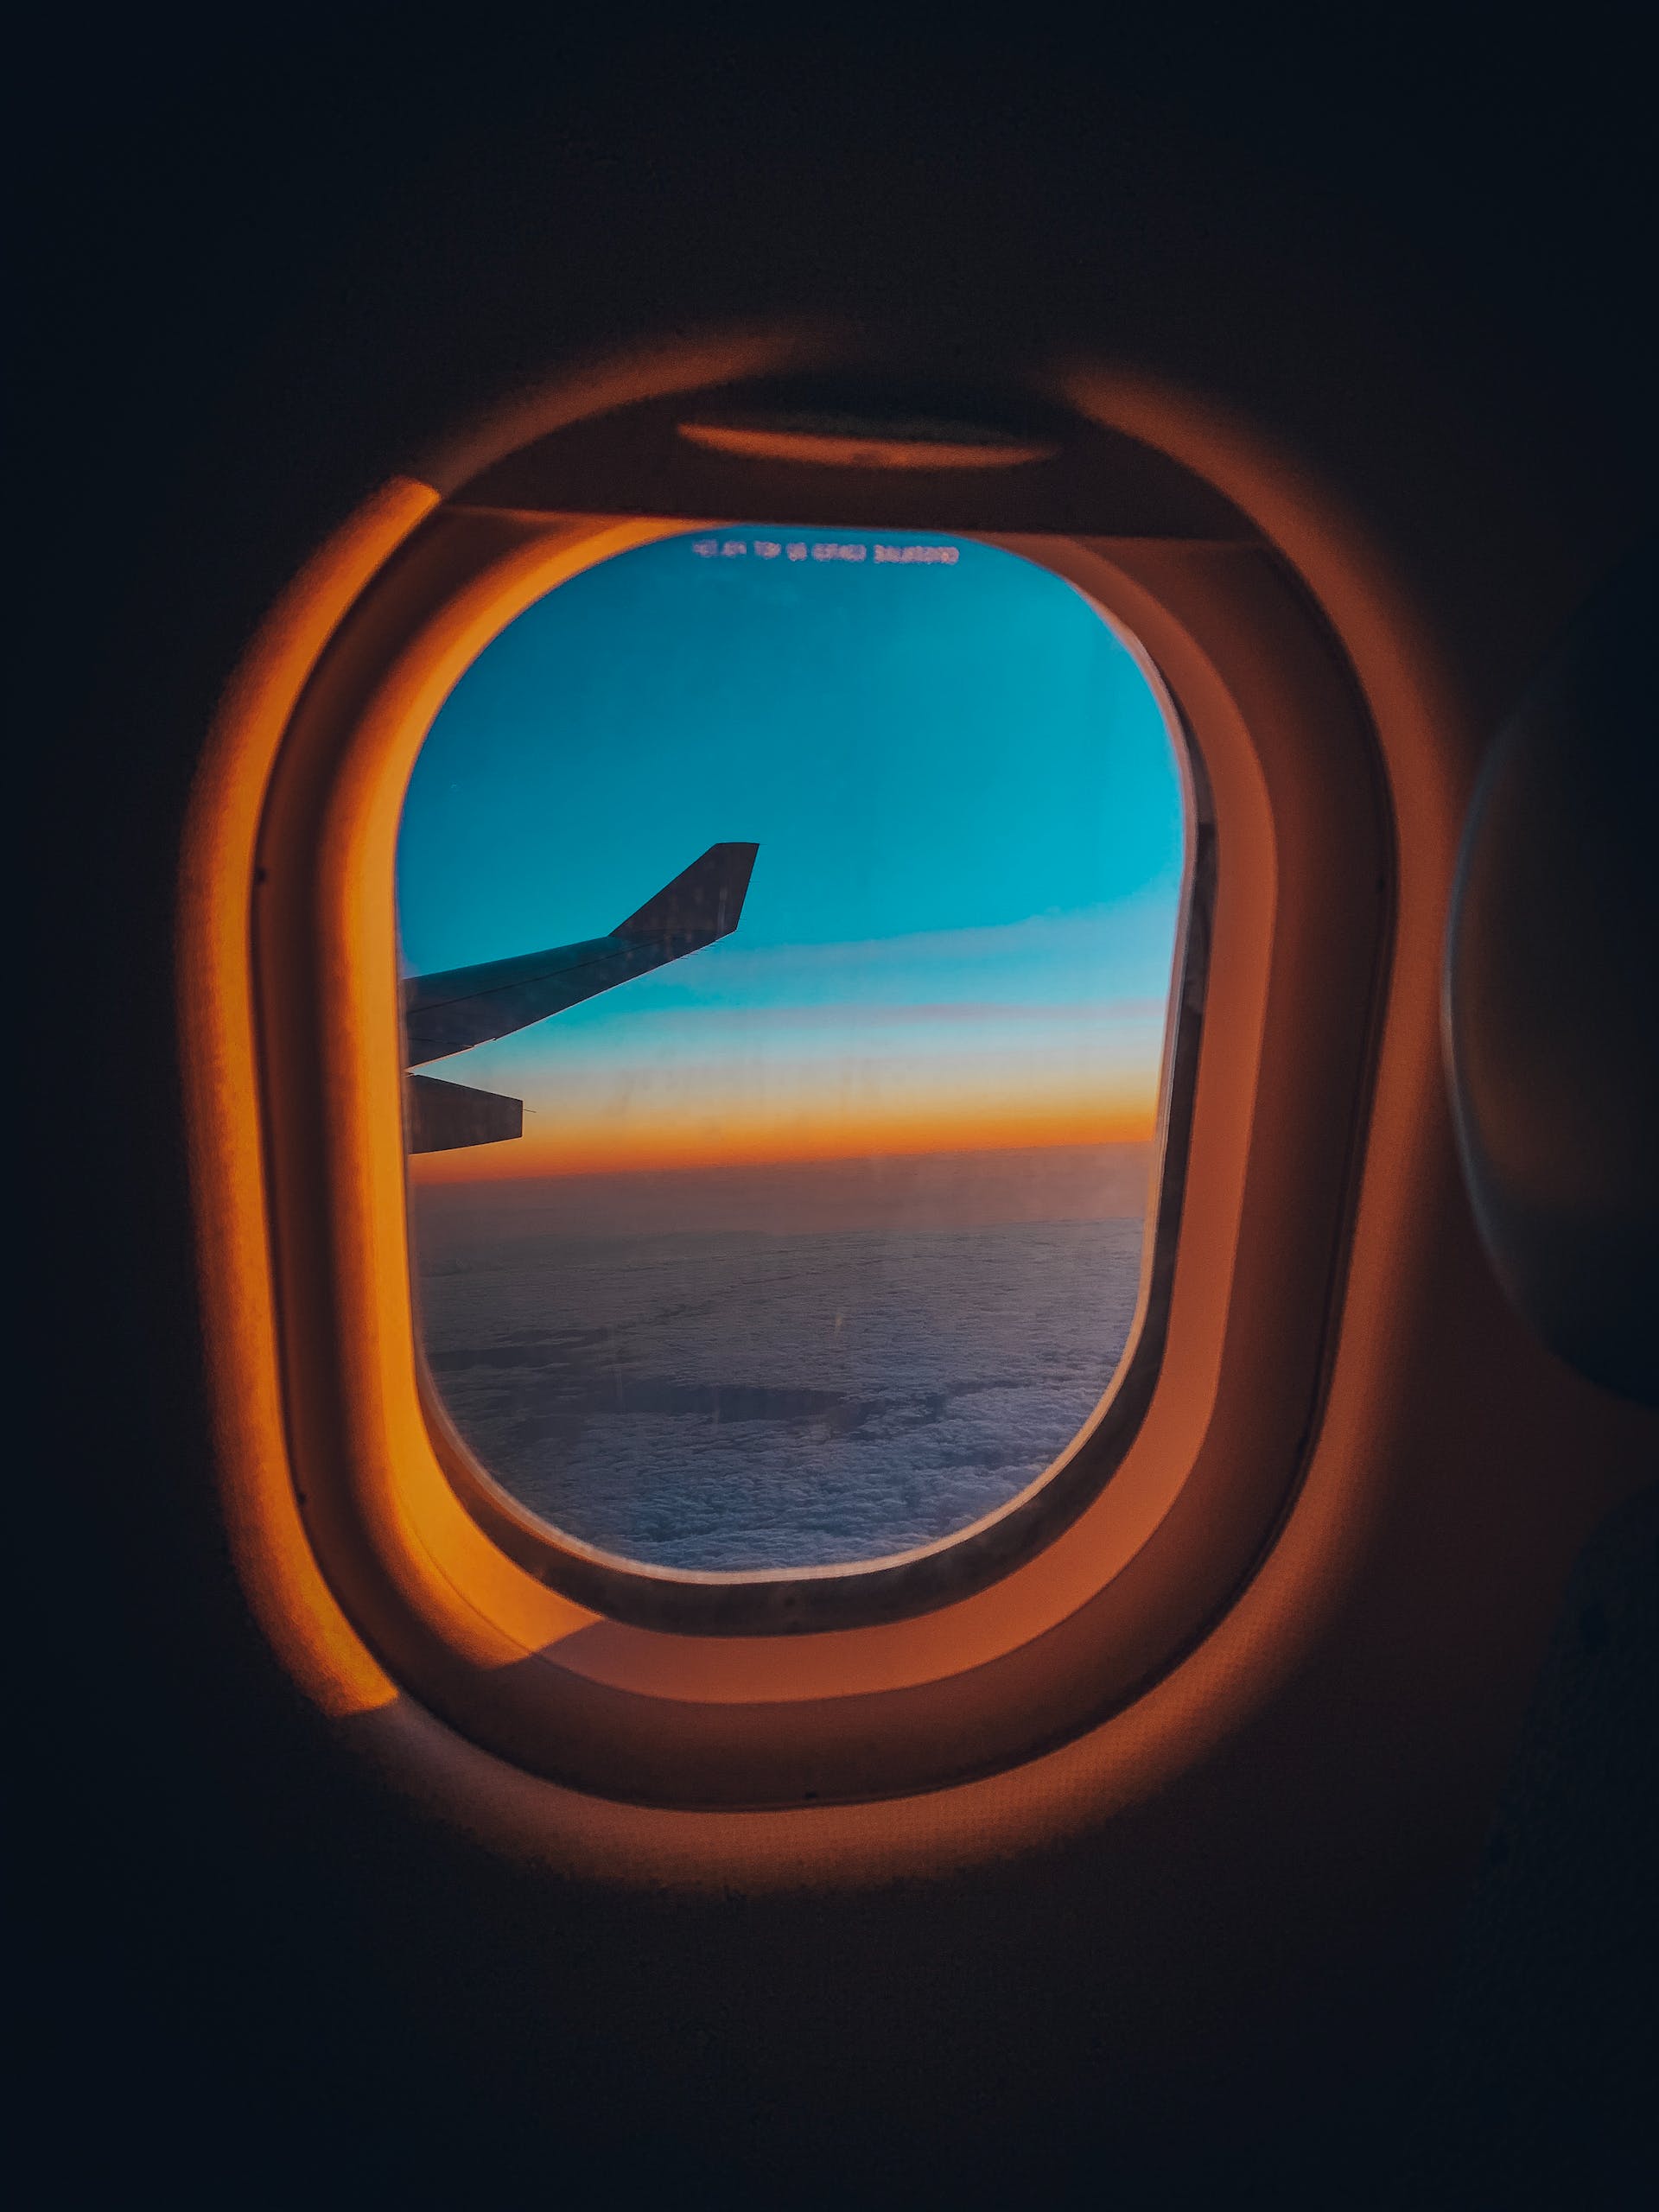 Foto de la ventanilla de un avión | Fuente: Pexels